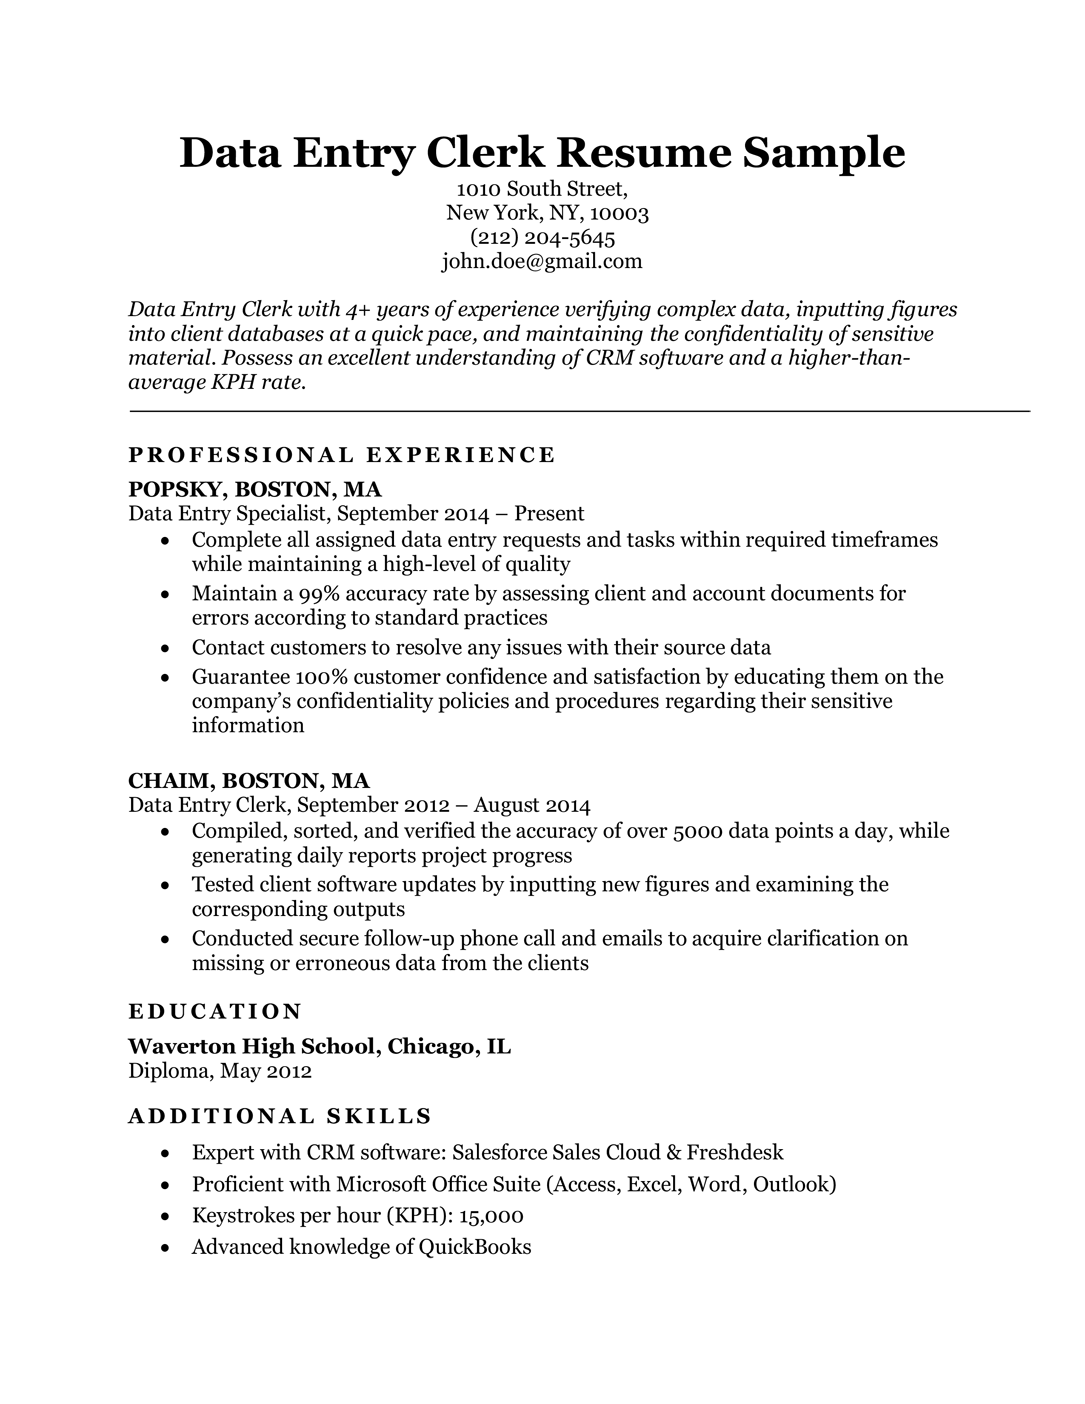 Data Entry Clerk Resume Sample | Resume Companion